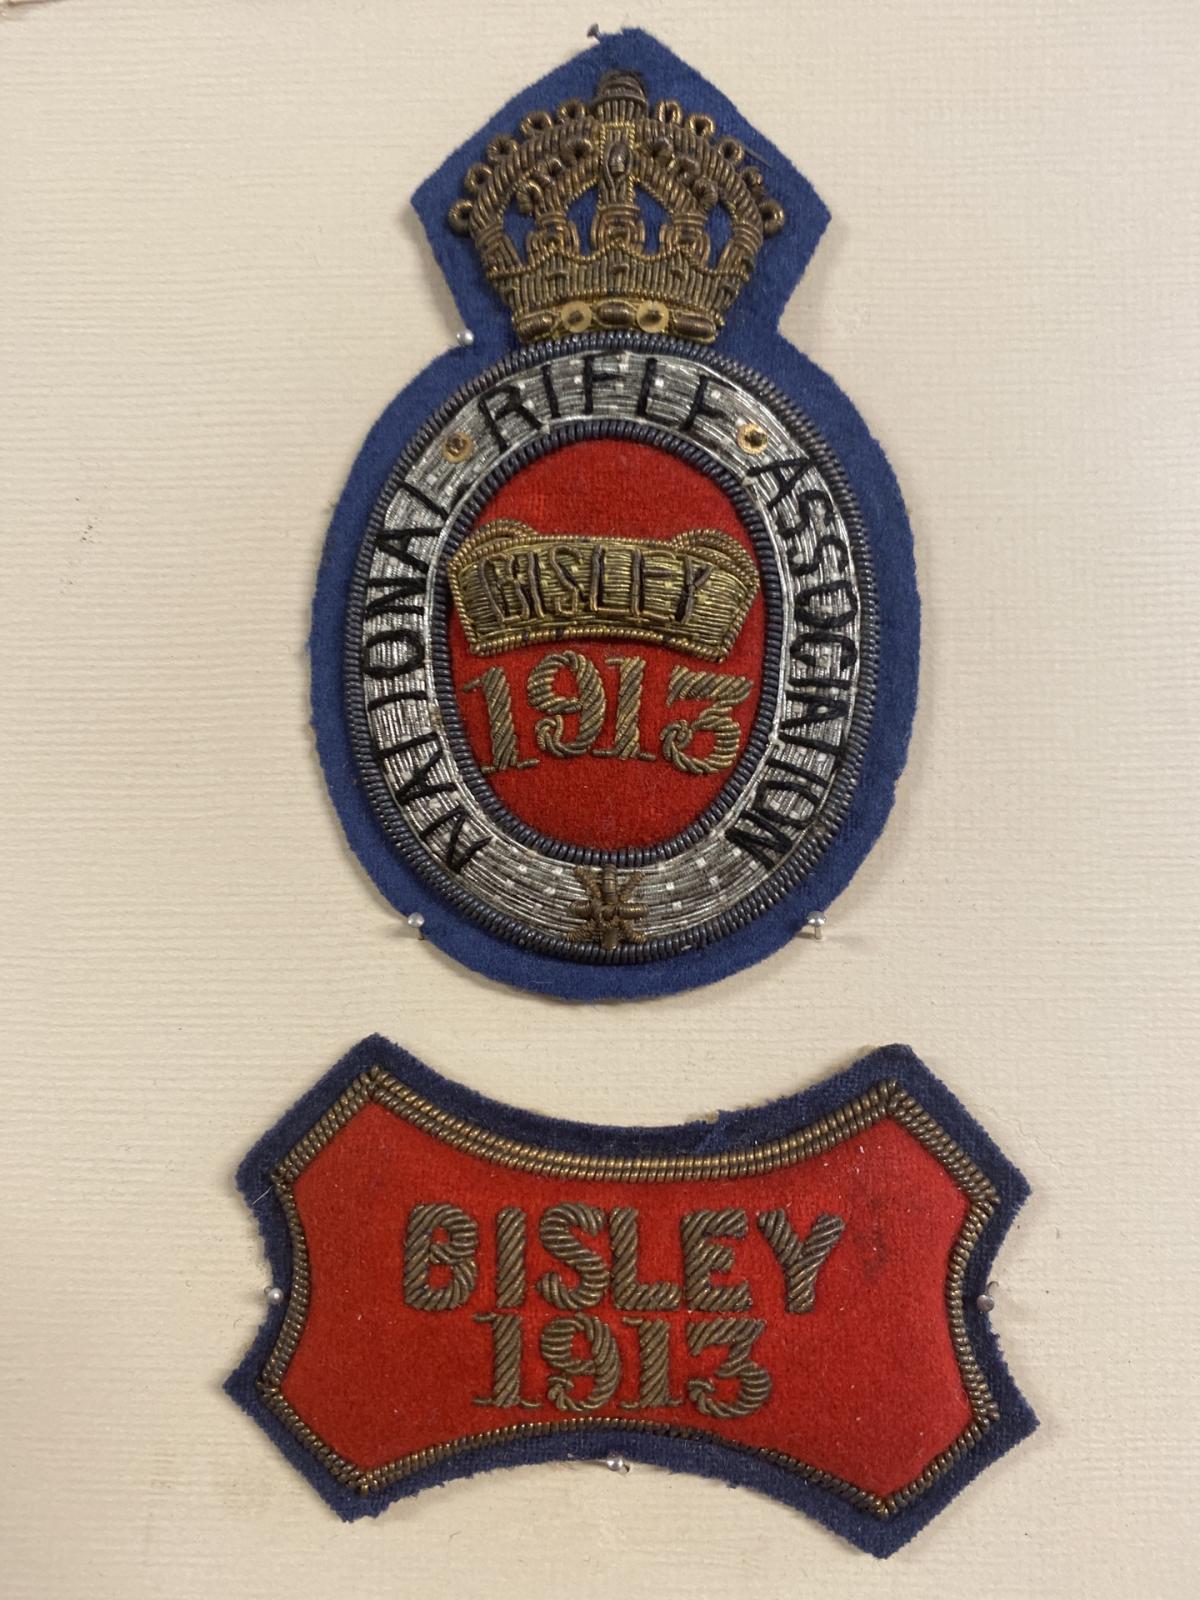 Bill Garrity's Bisley badges